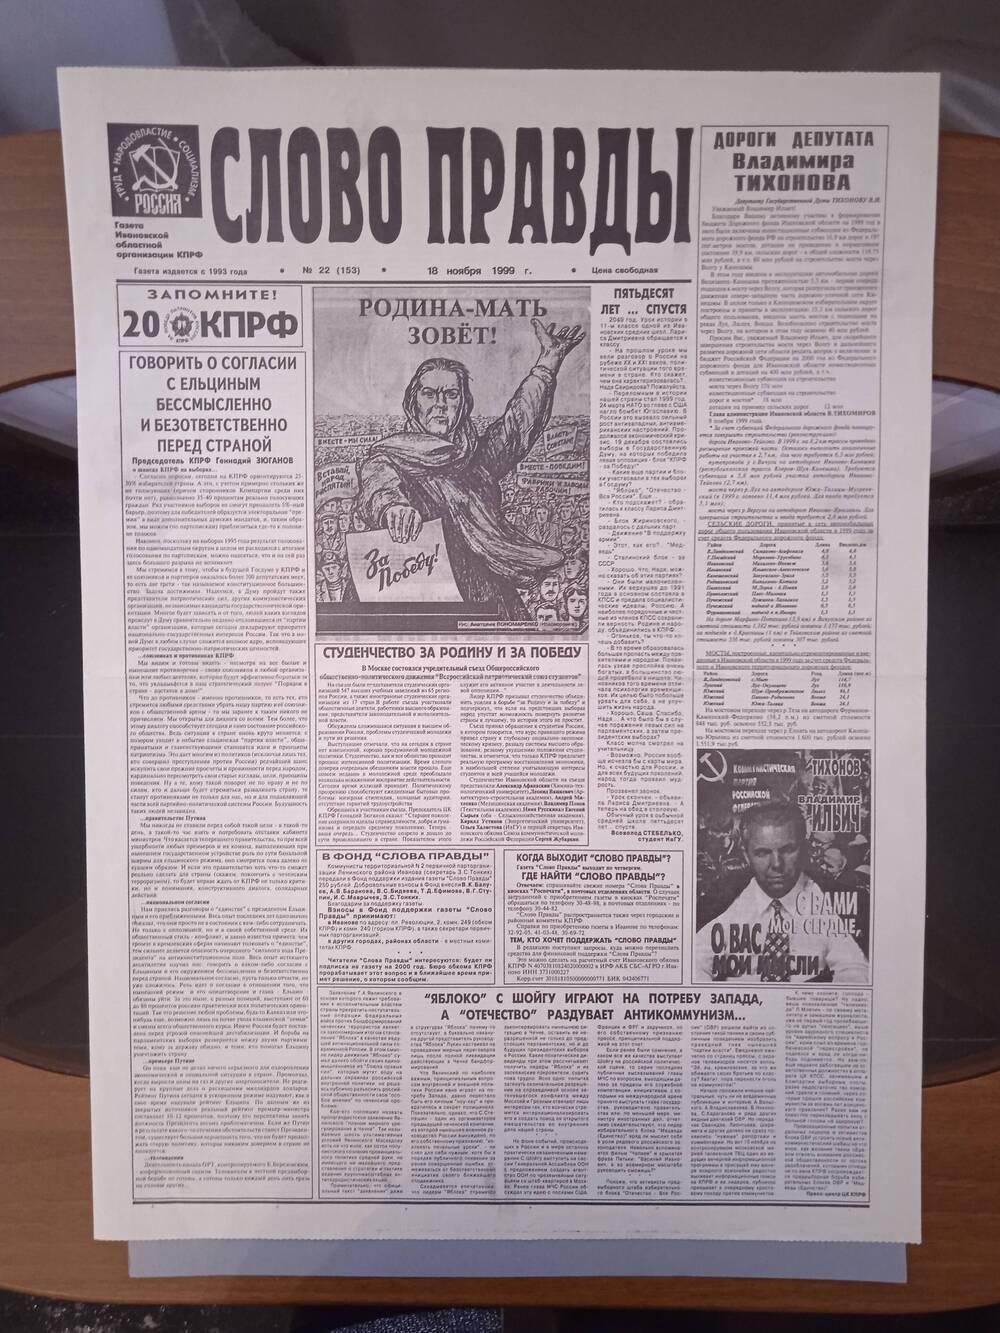 Газета «Слово Правды» № 22 от 18 ноября 1999 г. изд-е Ивановской обл. организации КПРФ.